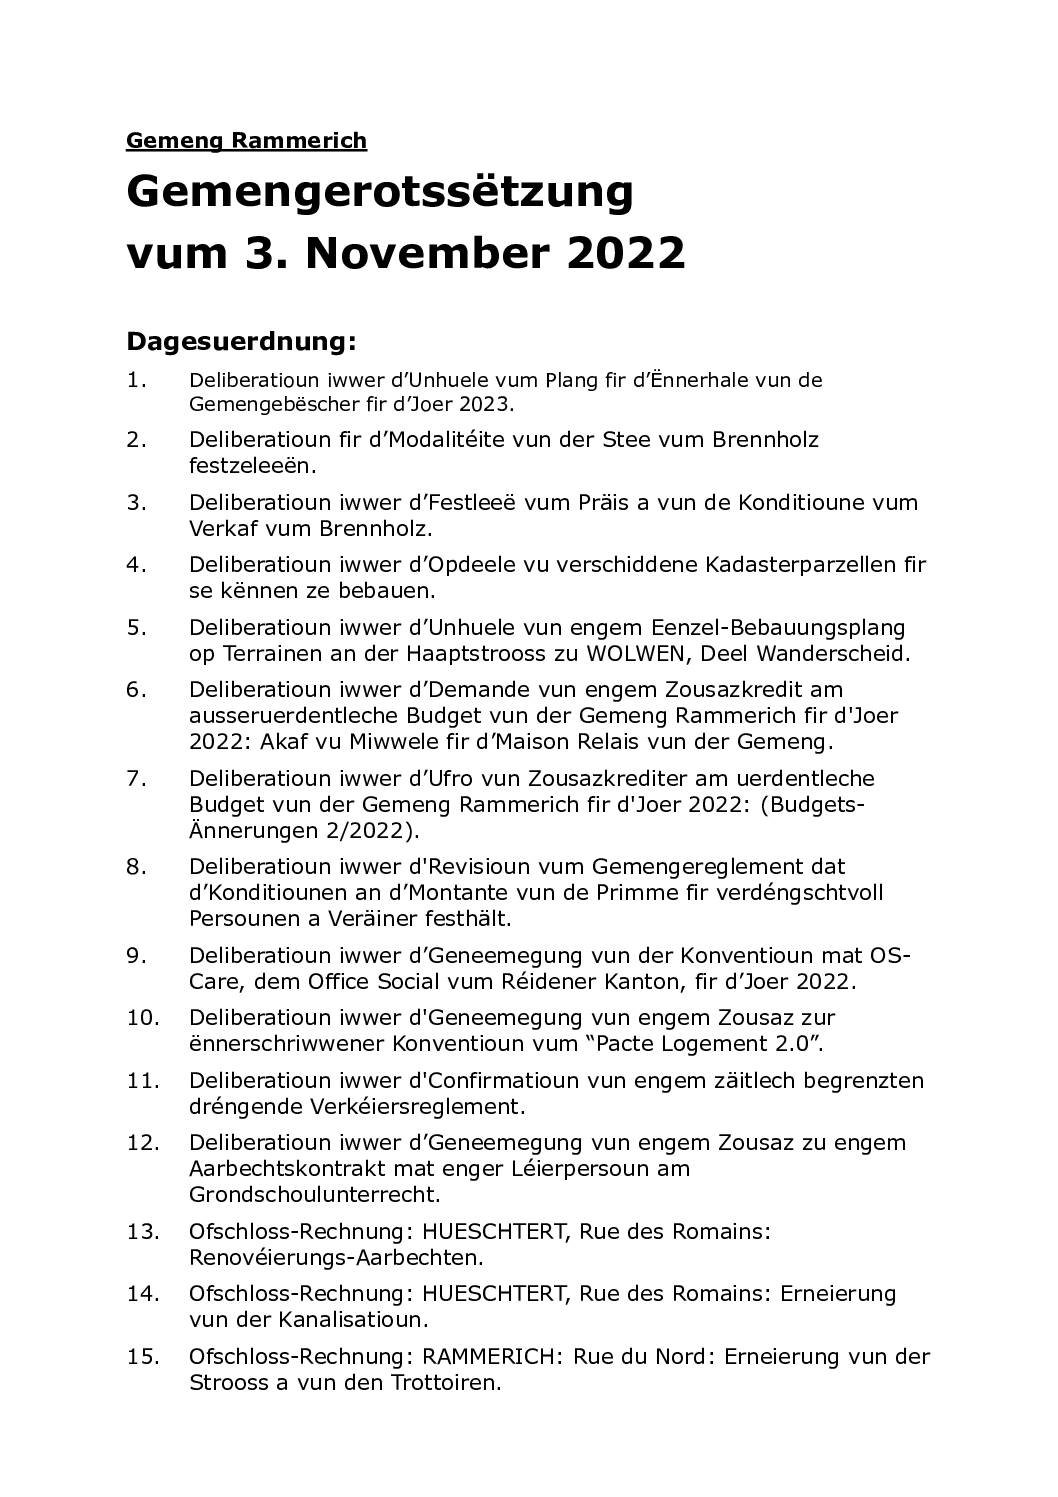 Rapport du conseil communal du 03.11.2022 (lëtzbuergesch)